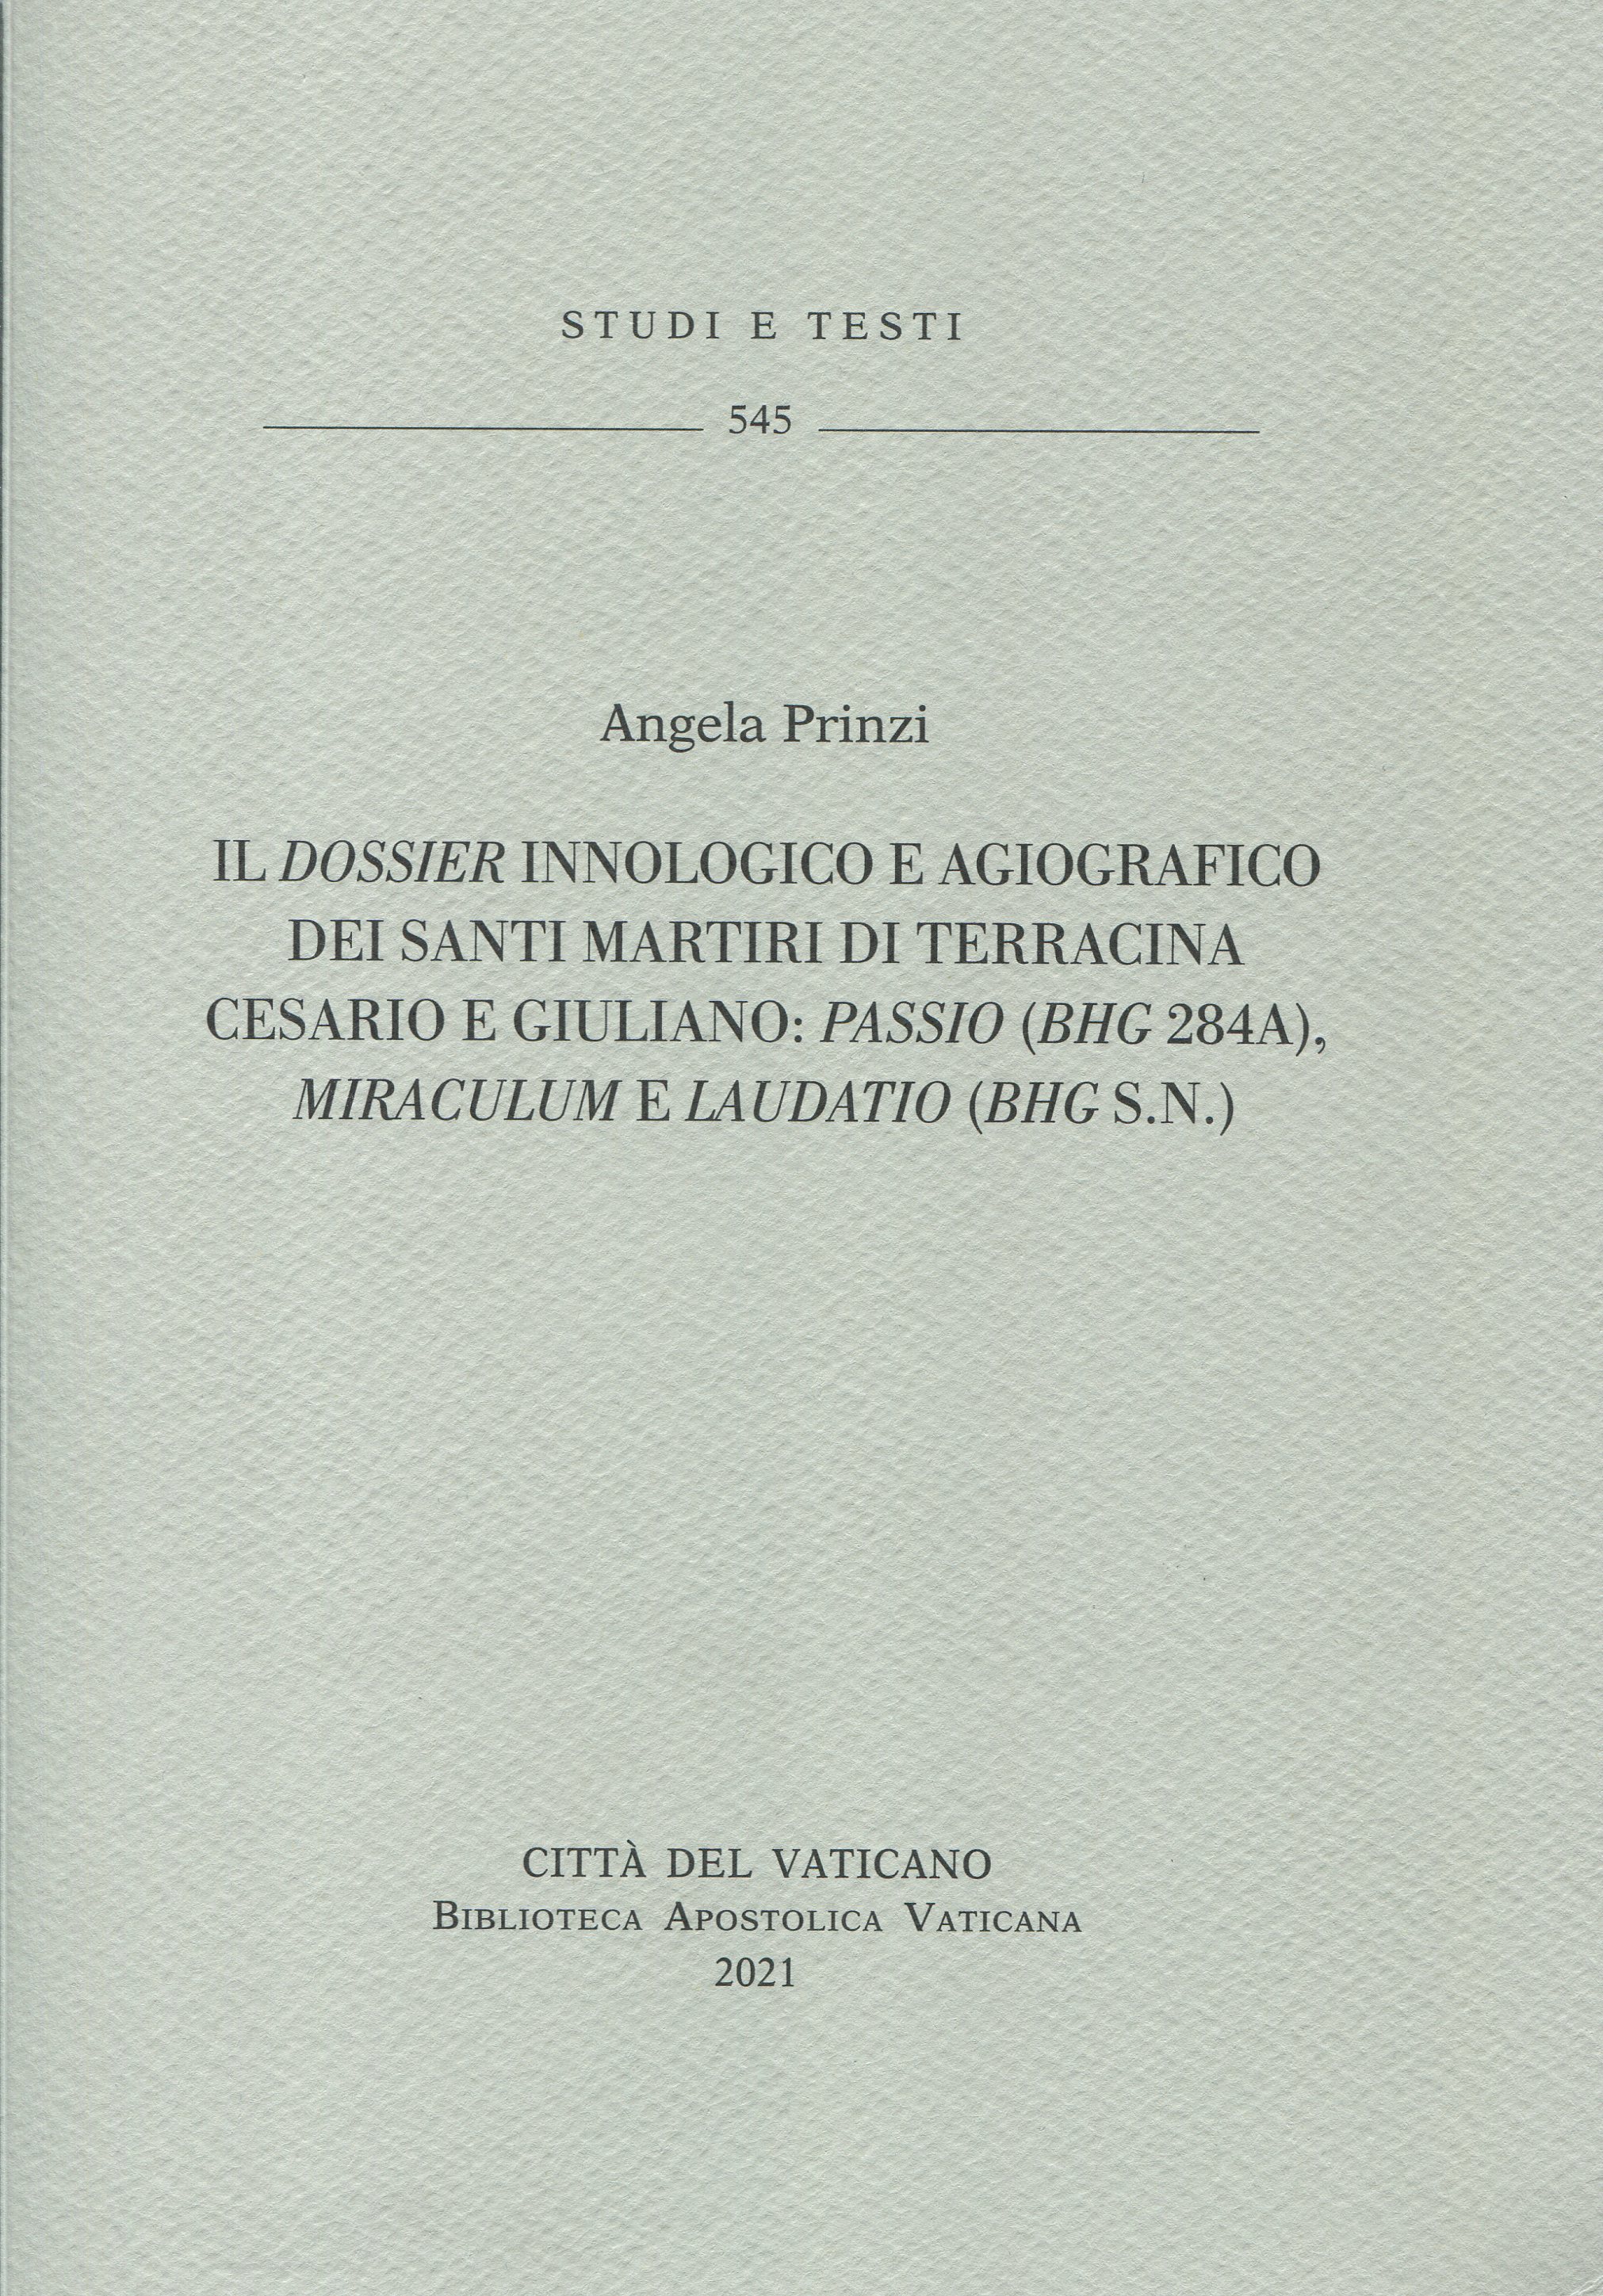 Il dossier innologico e agiografico dei santi martiri di Terracina Cesario e Giuliano: Passio (BHG 248a), Miraculum e Laudatio (BHG s.n.).